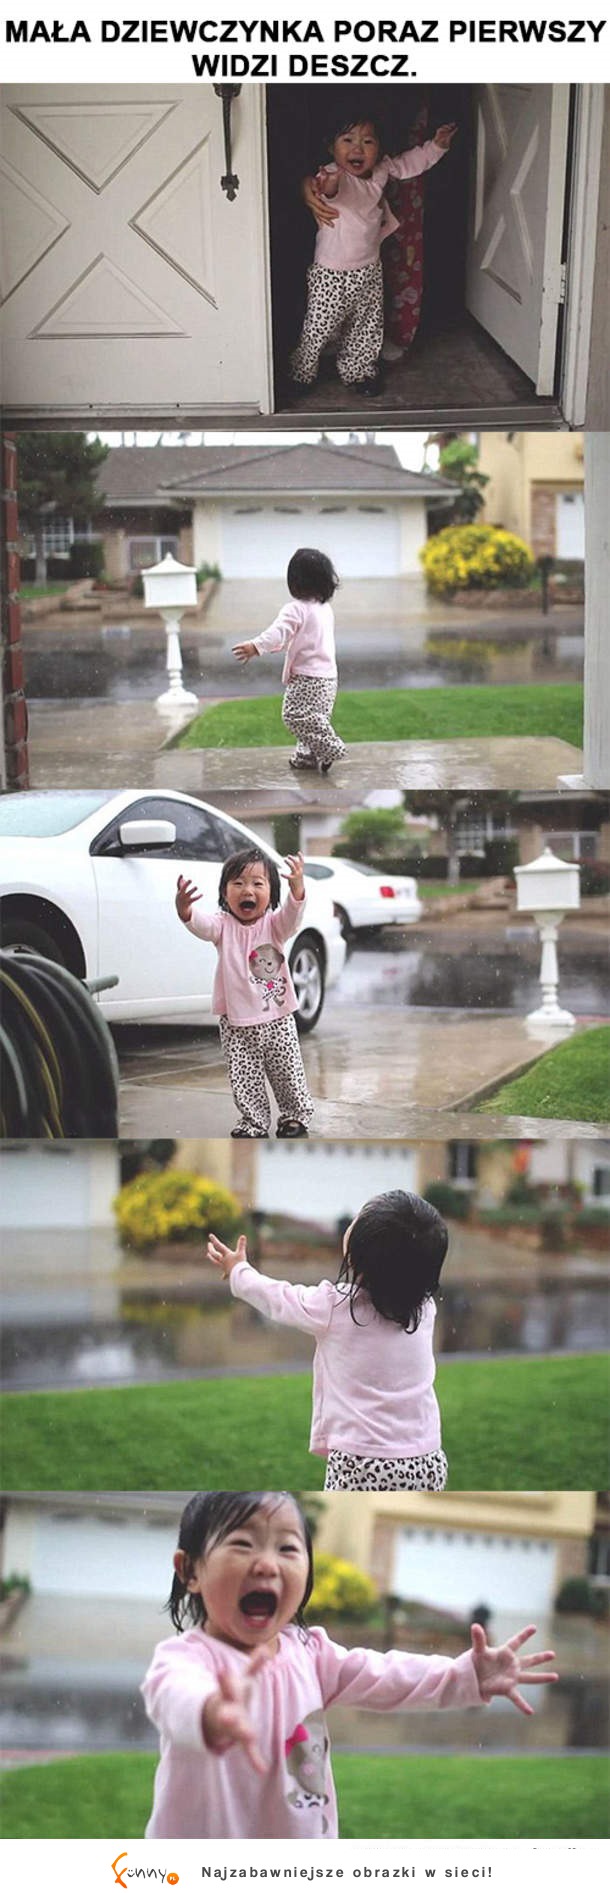 Radość podczas deszczu